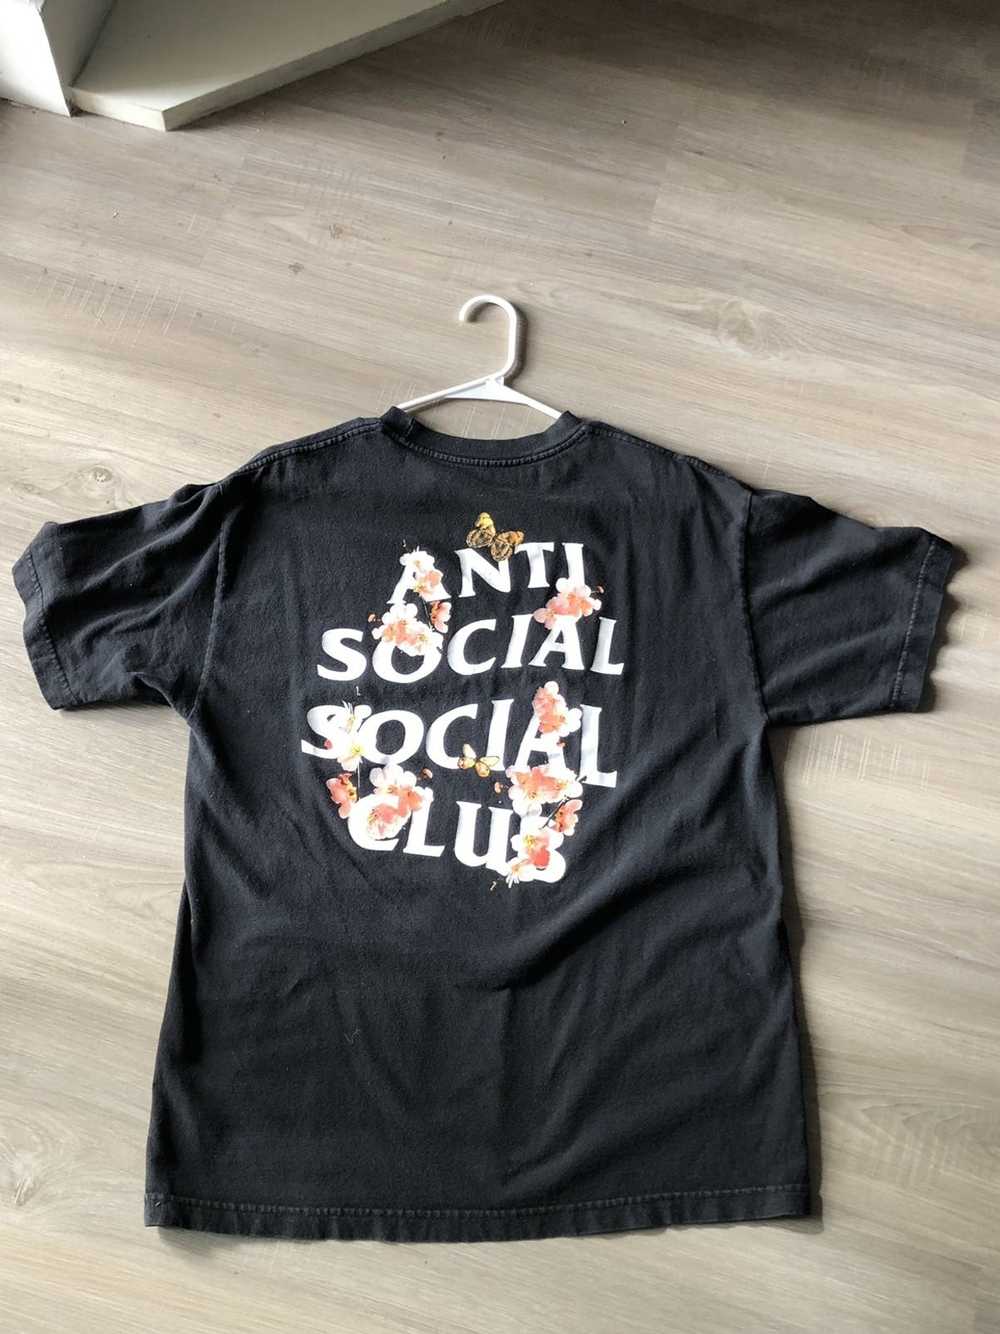 Anti Social Social Club Anti social social club - image 2